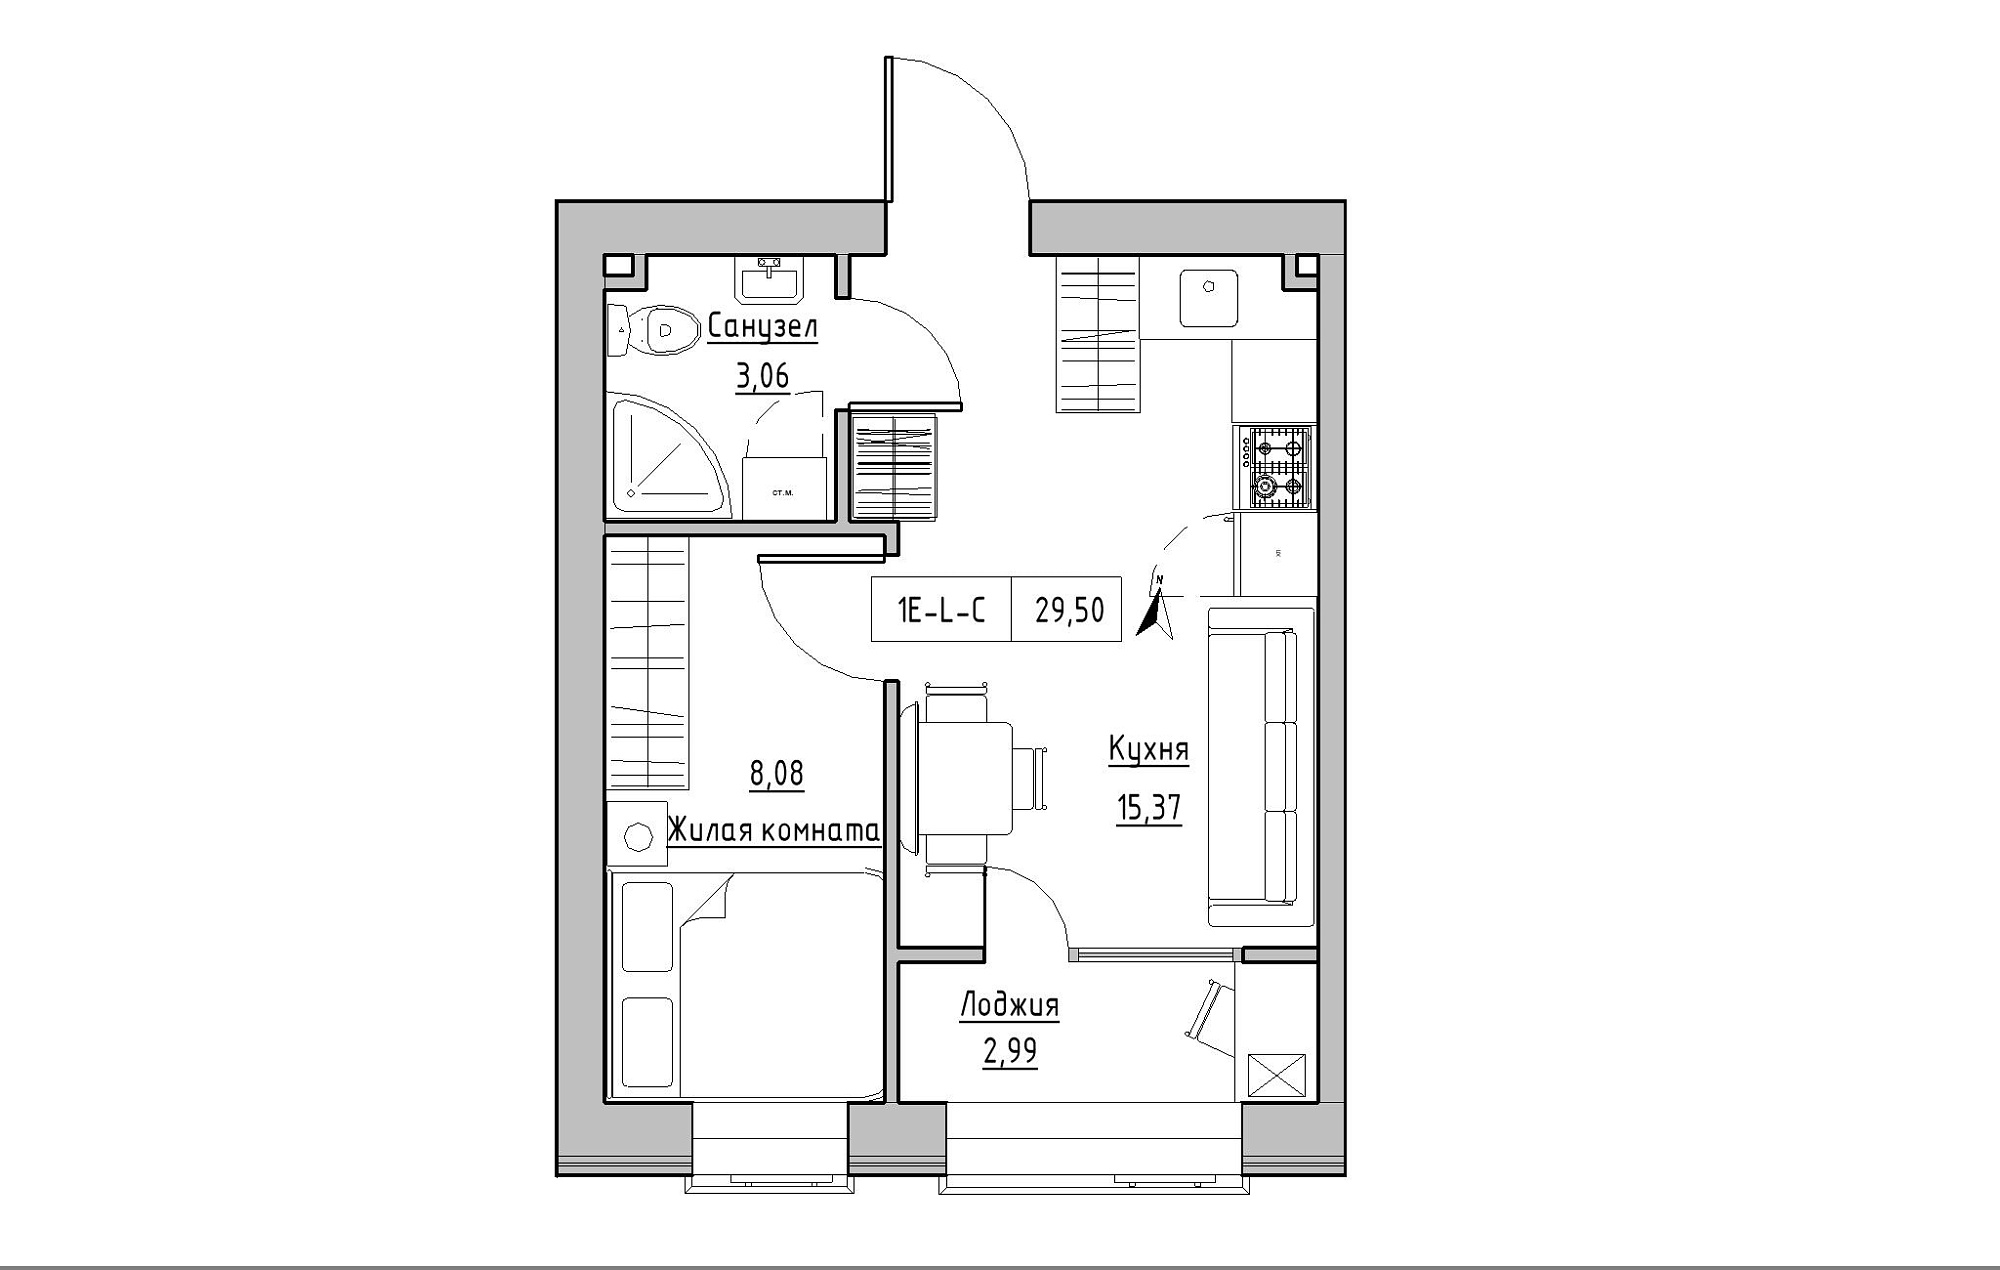 Планування 1-к квартира площею 29.5м2, KS-019-03/0010.